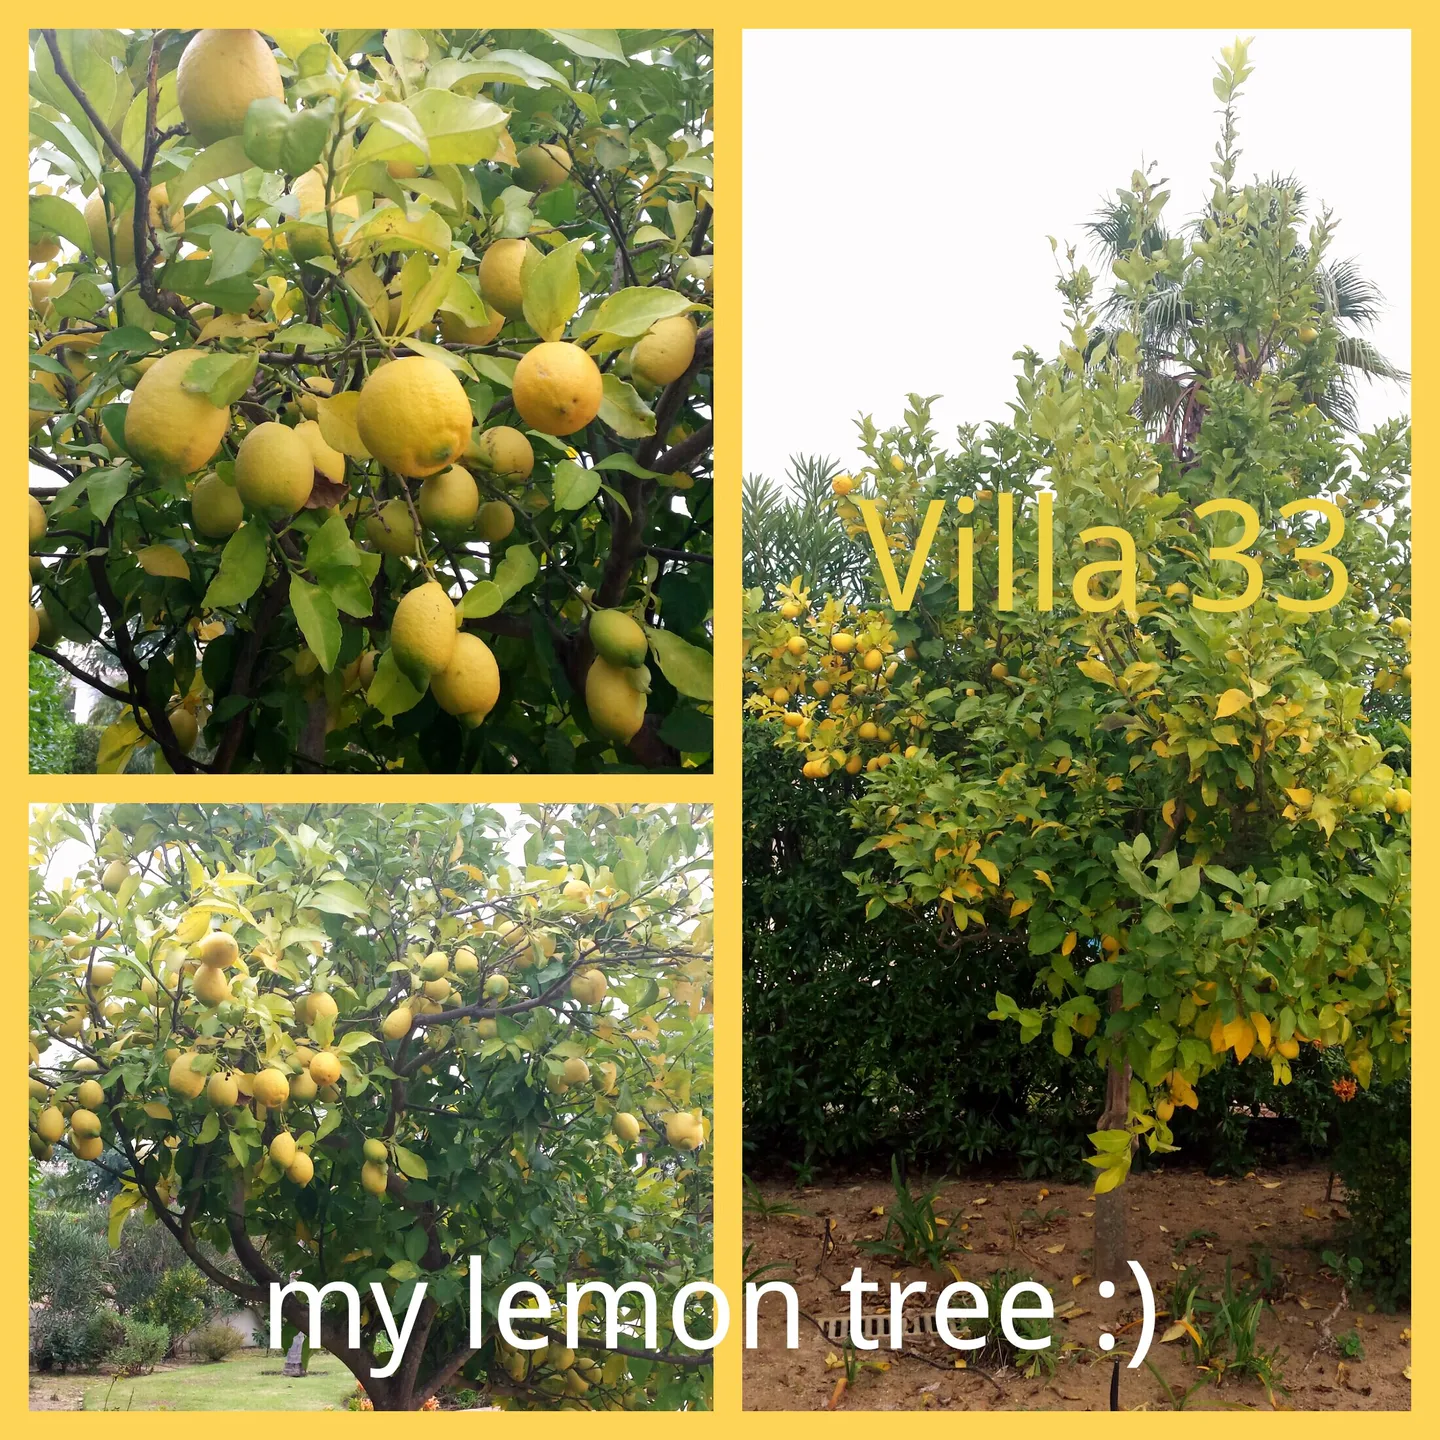 My lemon tree :)